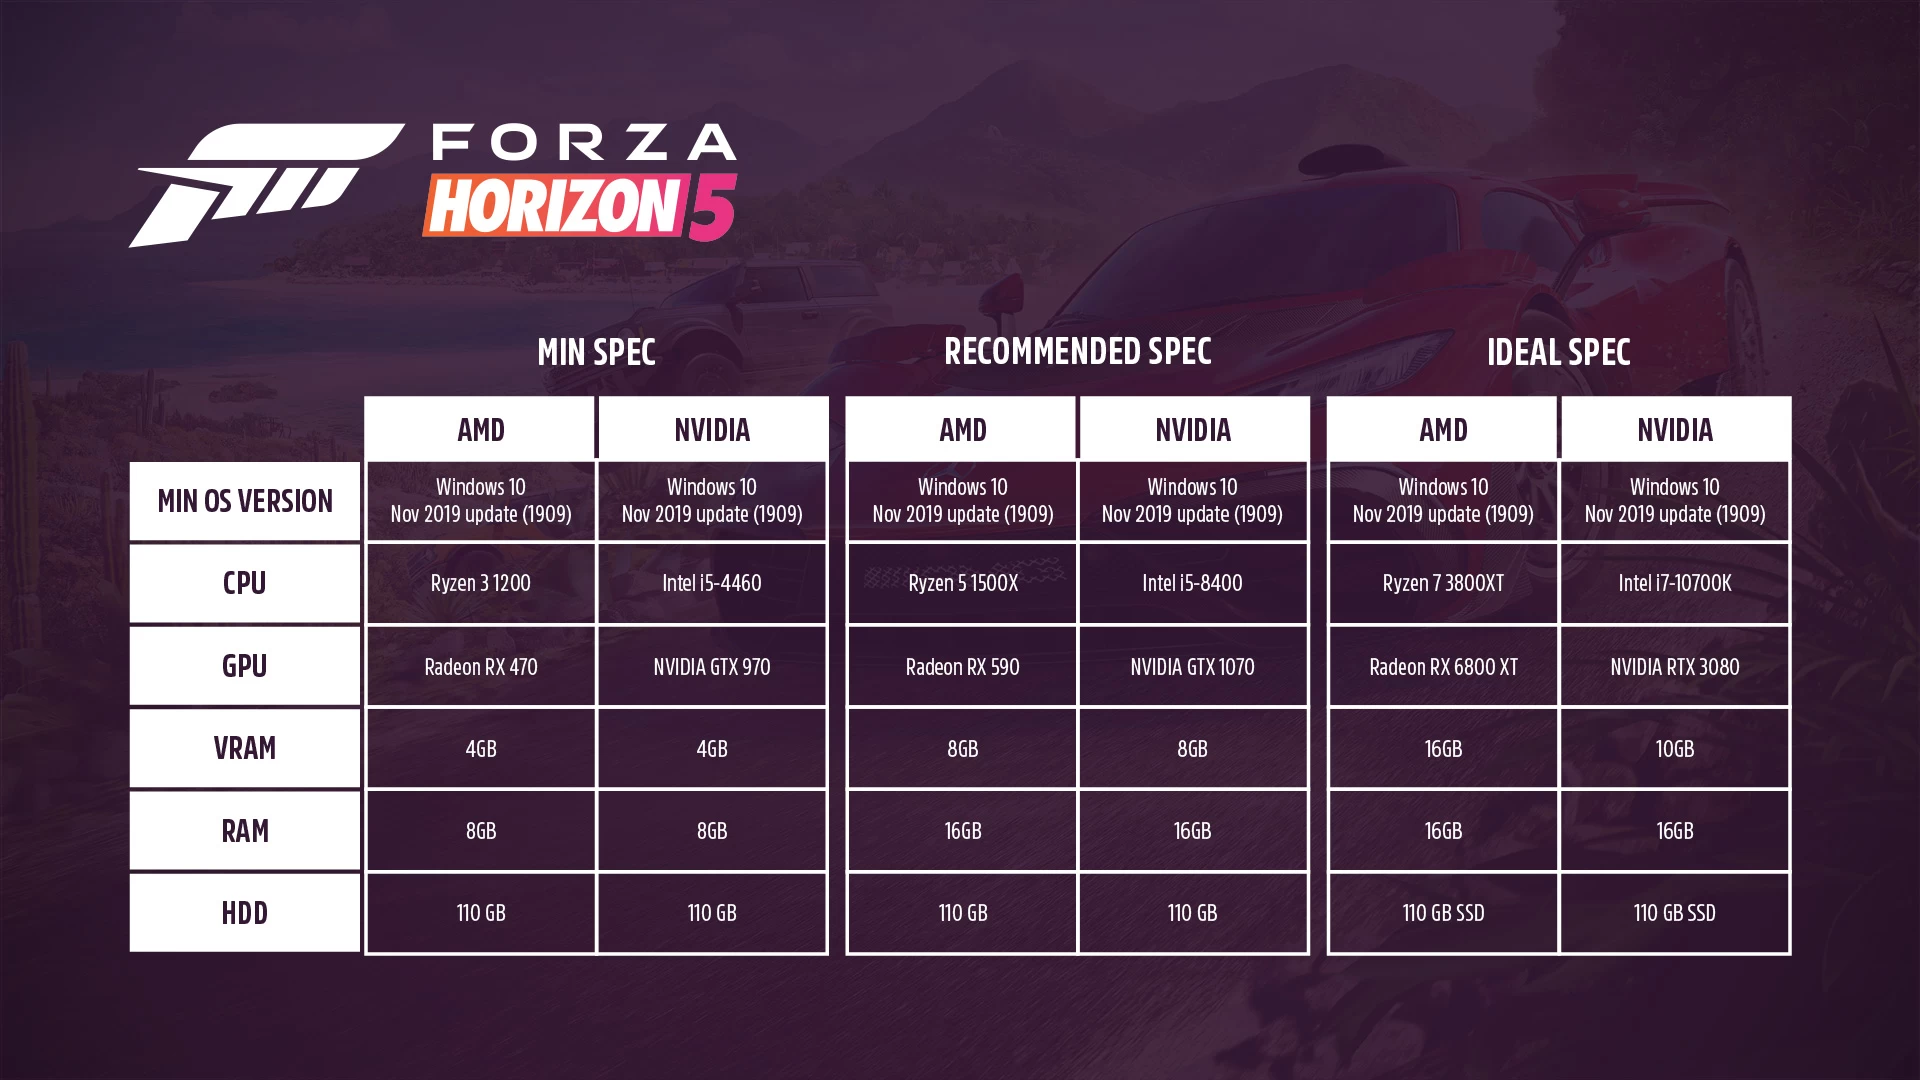 bb83c500 8ef0 481f 9d9f e3aff53b156d | Forza Horizon 5 | เผยสเปกขั้นต่ำ และ แนะนำของ Forza Horizon 5 เวอร์ชั่น PC อย่างเป็นทางการ